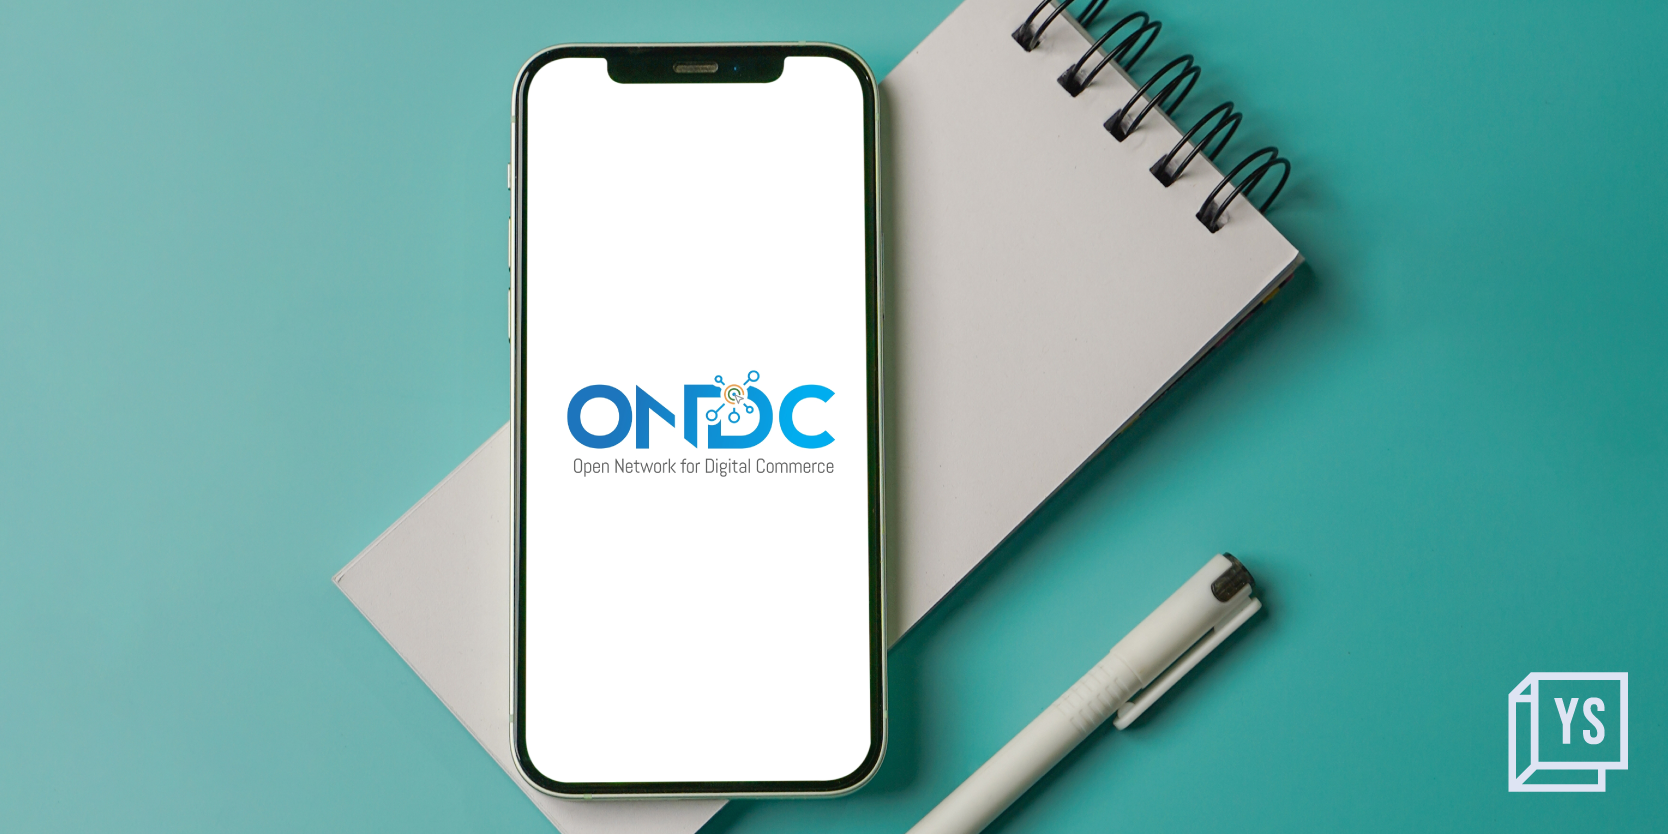 ONDC revises incentive structure, slashes discounts
